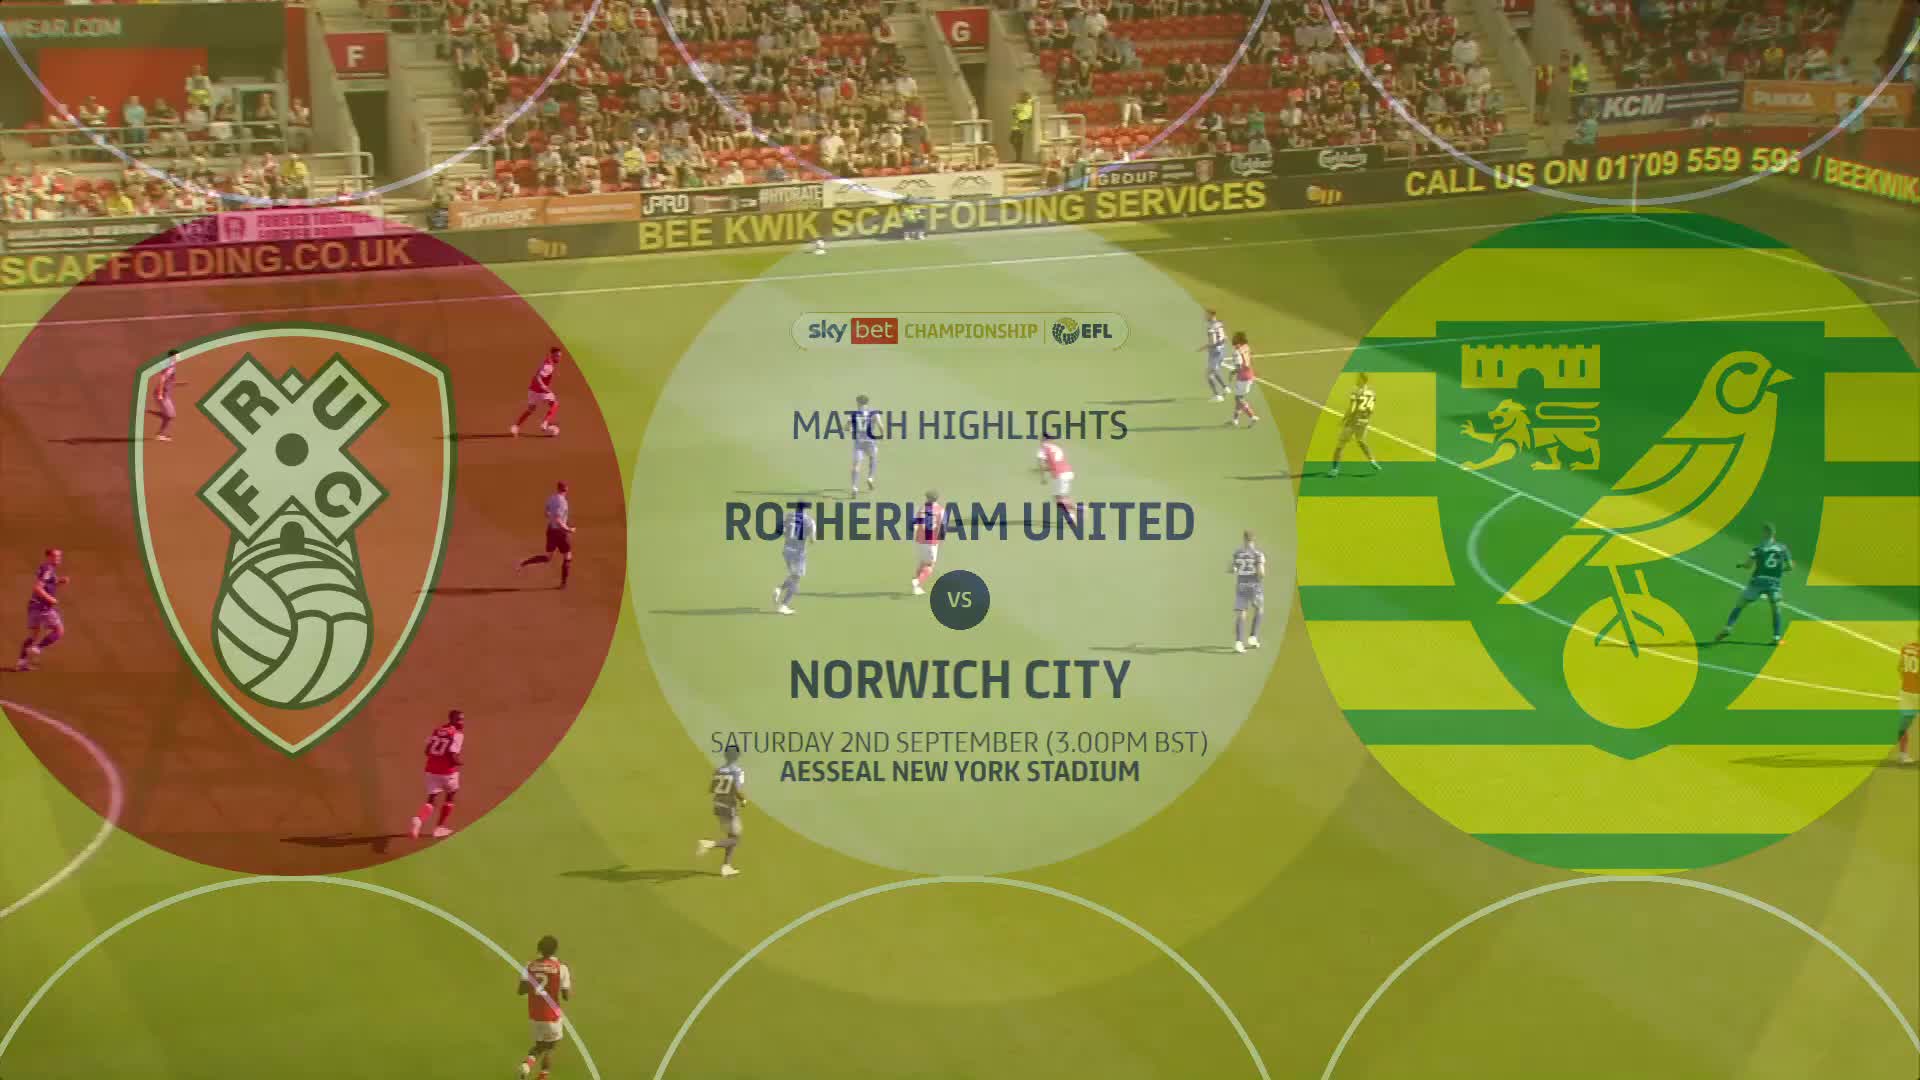 【赛事集锦】A first league victory    Rotherham United 2  1 Norwich City   Highlights _1080p